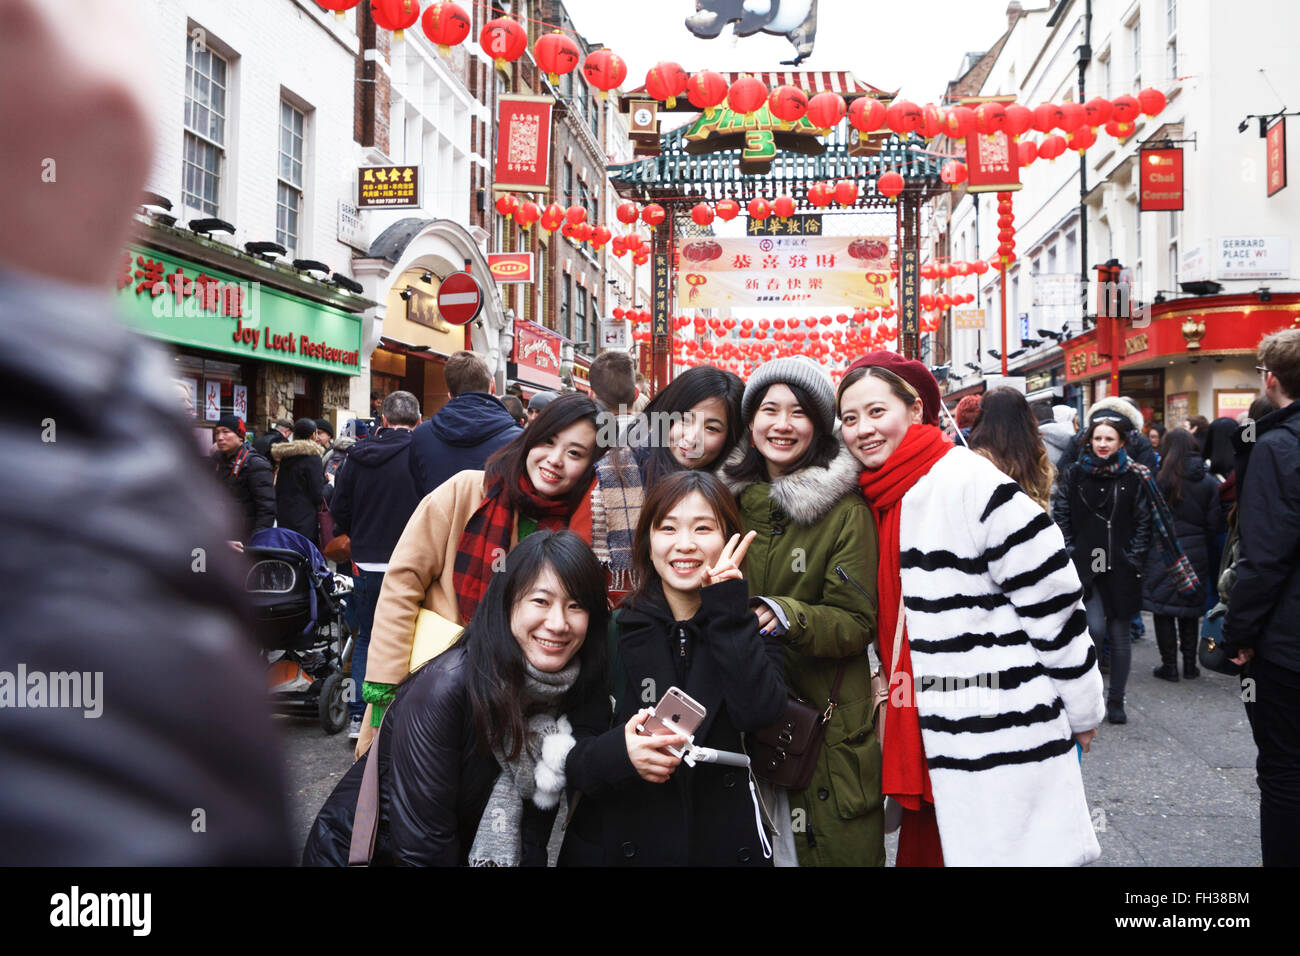 Fête du nouvel an chinois Londres, Chinatown. Jeunes filles chinoises photographiées. Chine Royaume-Uni. Chine Londres. Visitez la Grande-Bretagne. Tourisme de Londres. l Banque D'Images